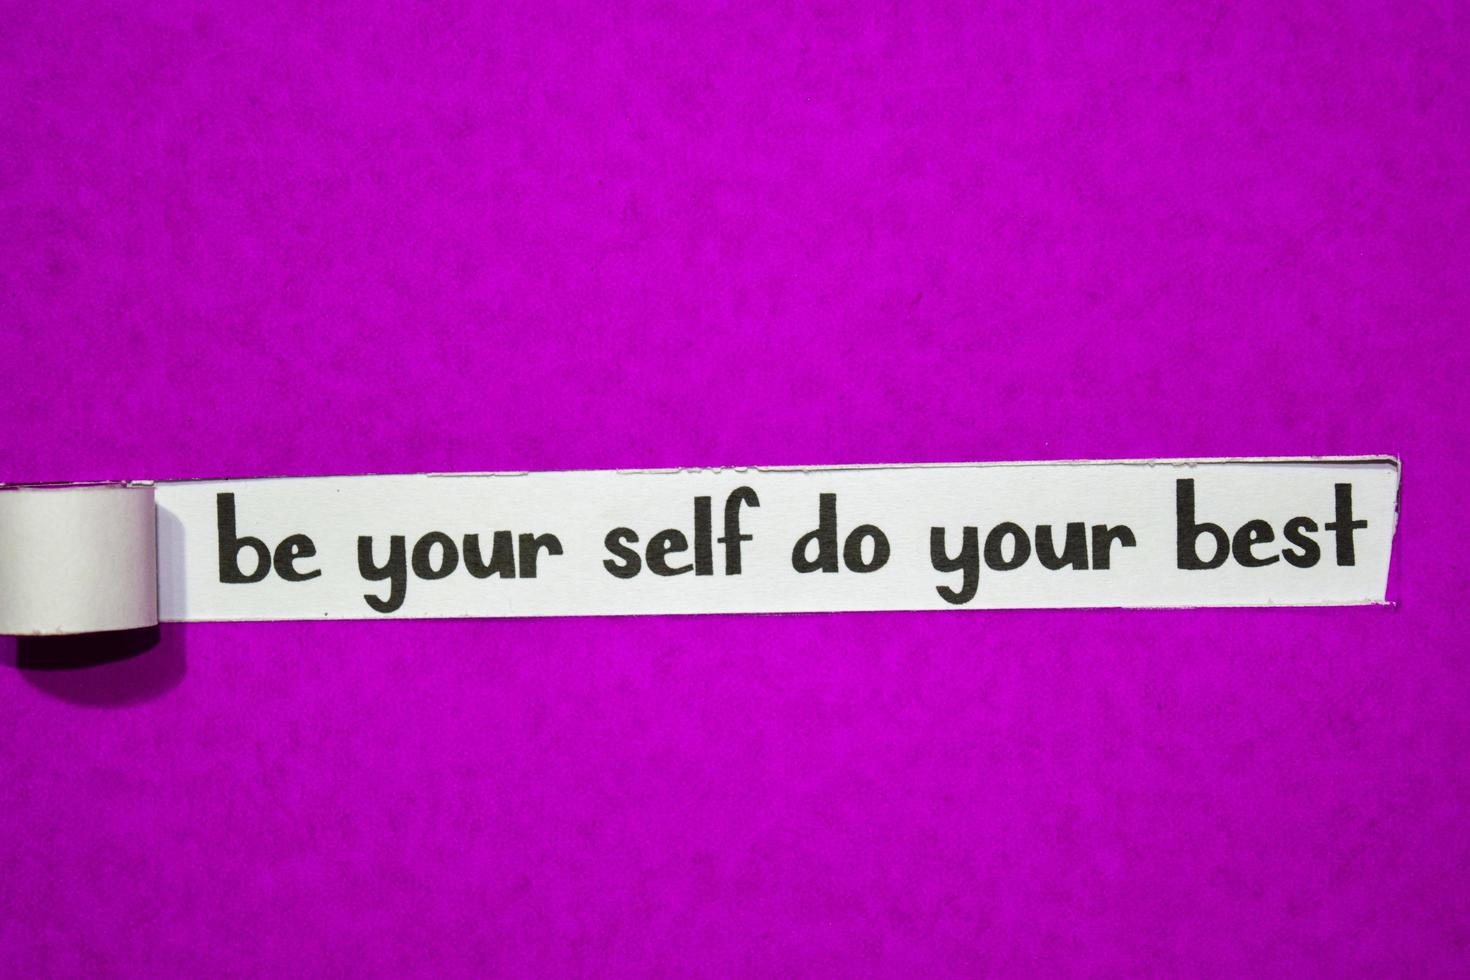 Sea usted mismo, haga su mejor texto, inspiración, motivación y concepto de negocio en papel rasgado púrpura foto